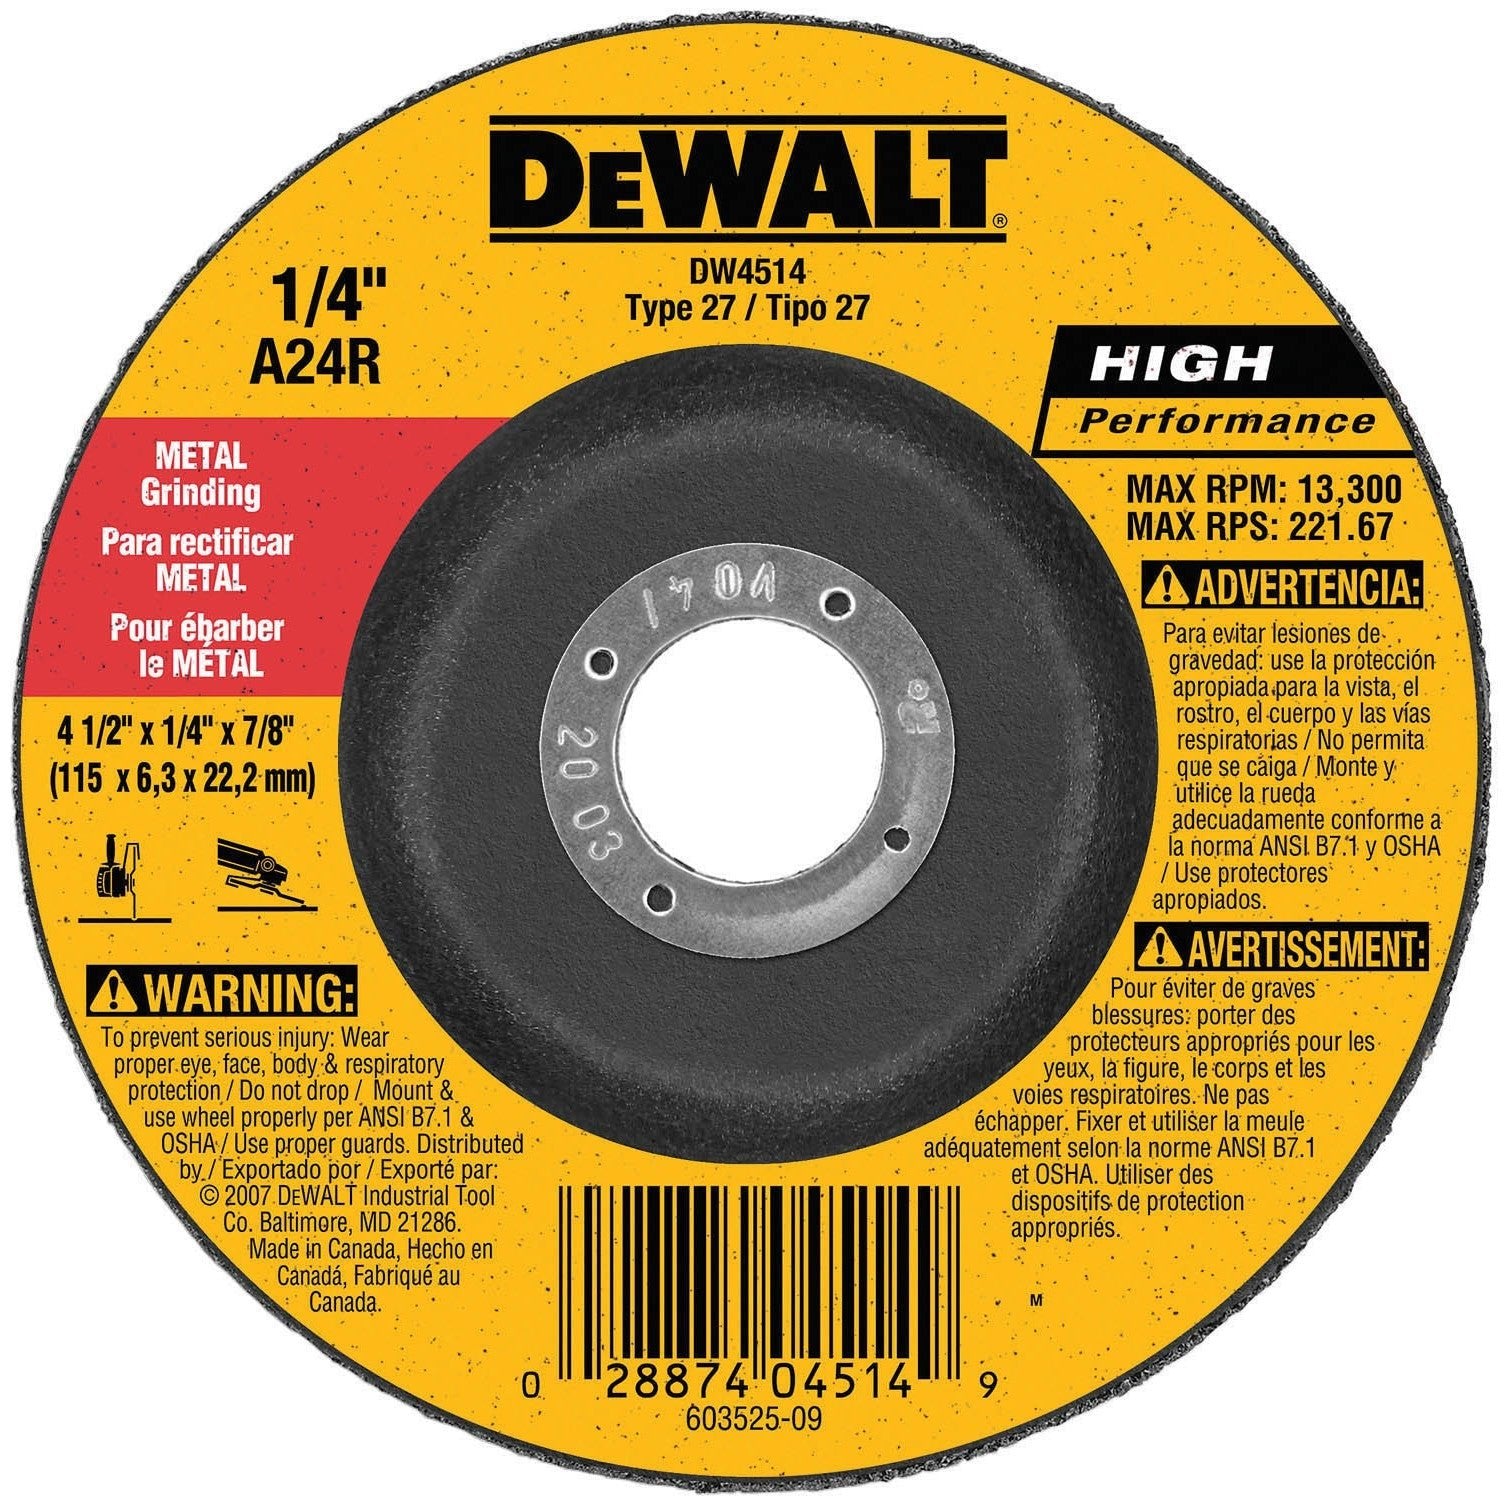 DEWALT DW4514  -  HP METAL GRINDING WHEELS TYPE 27